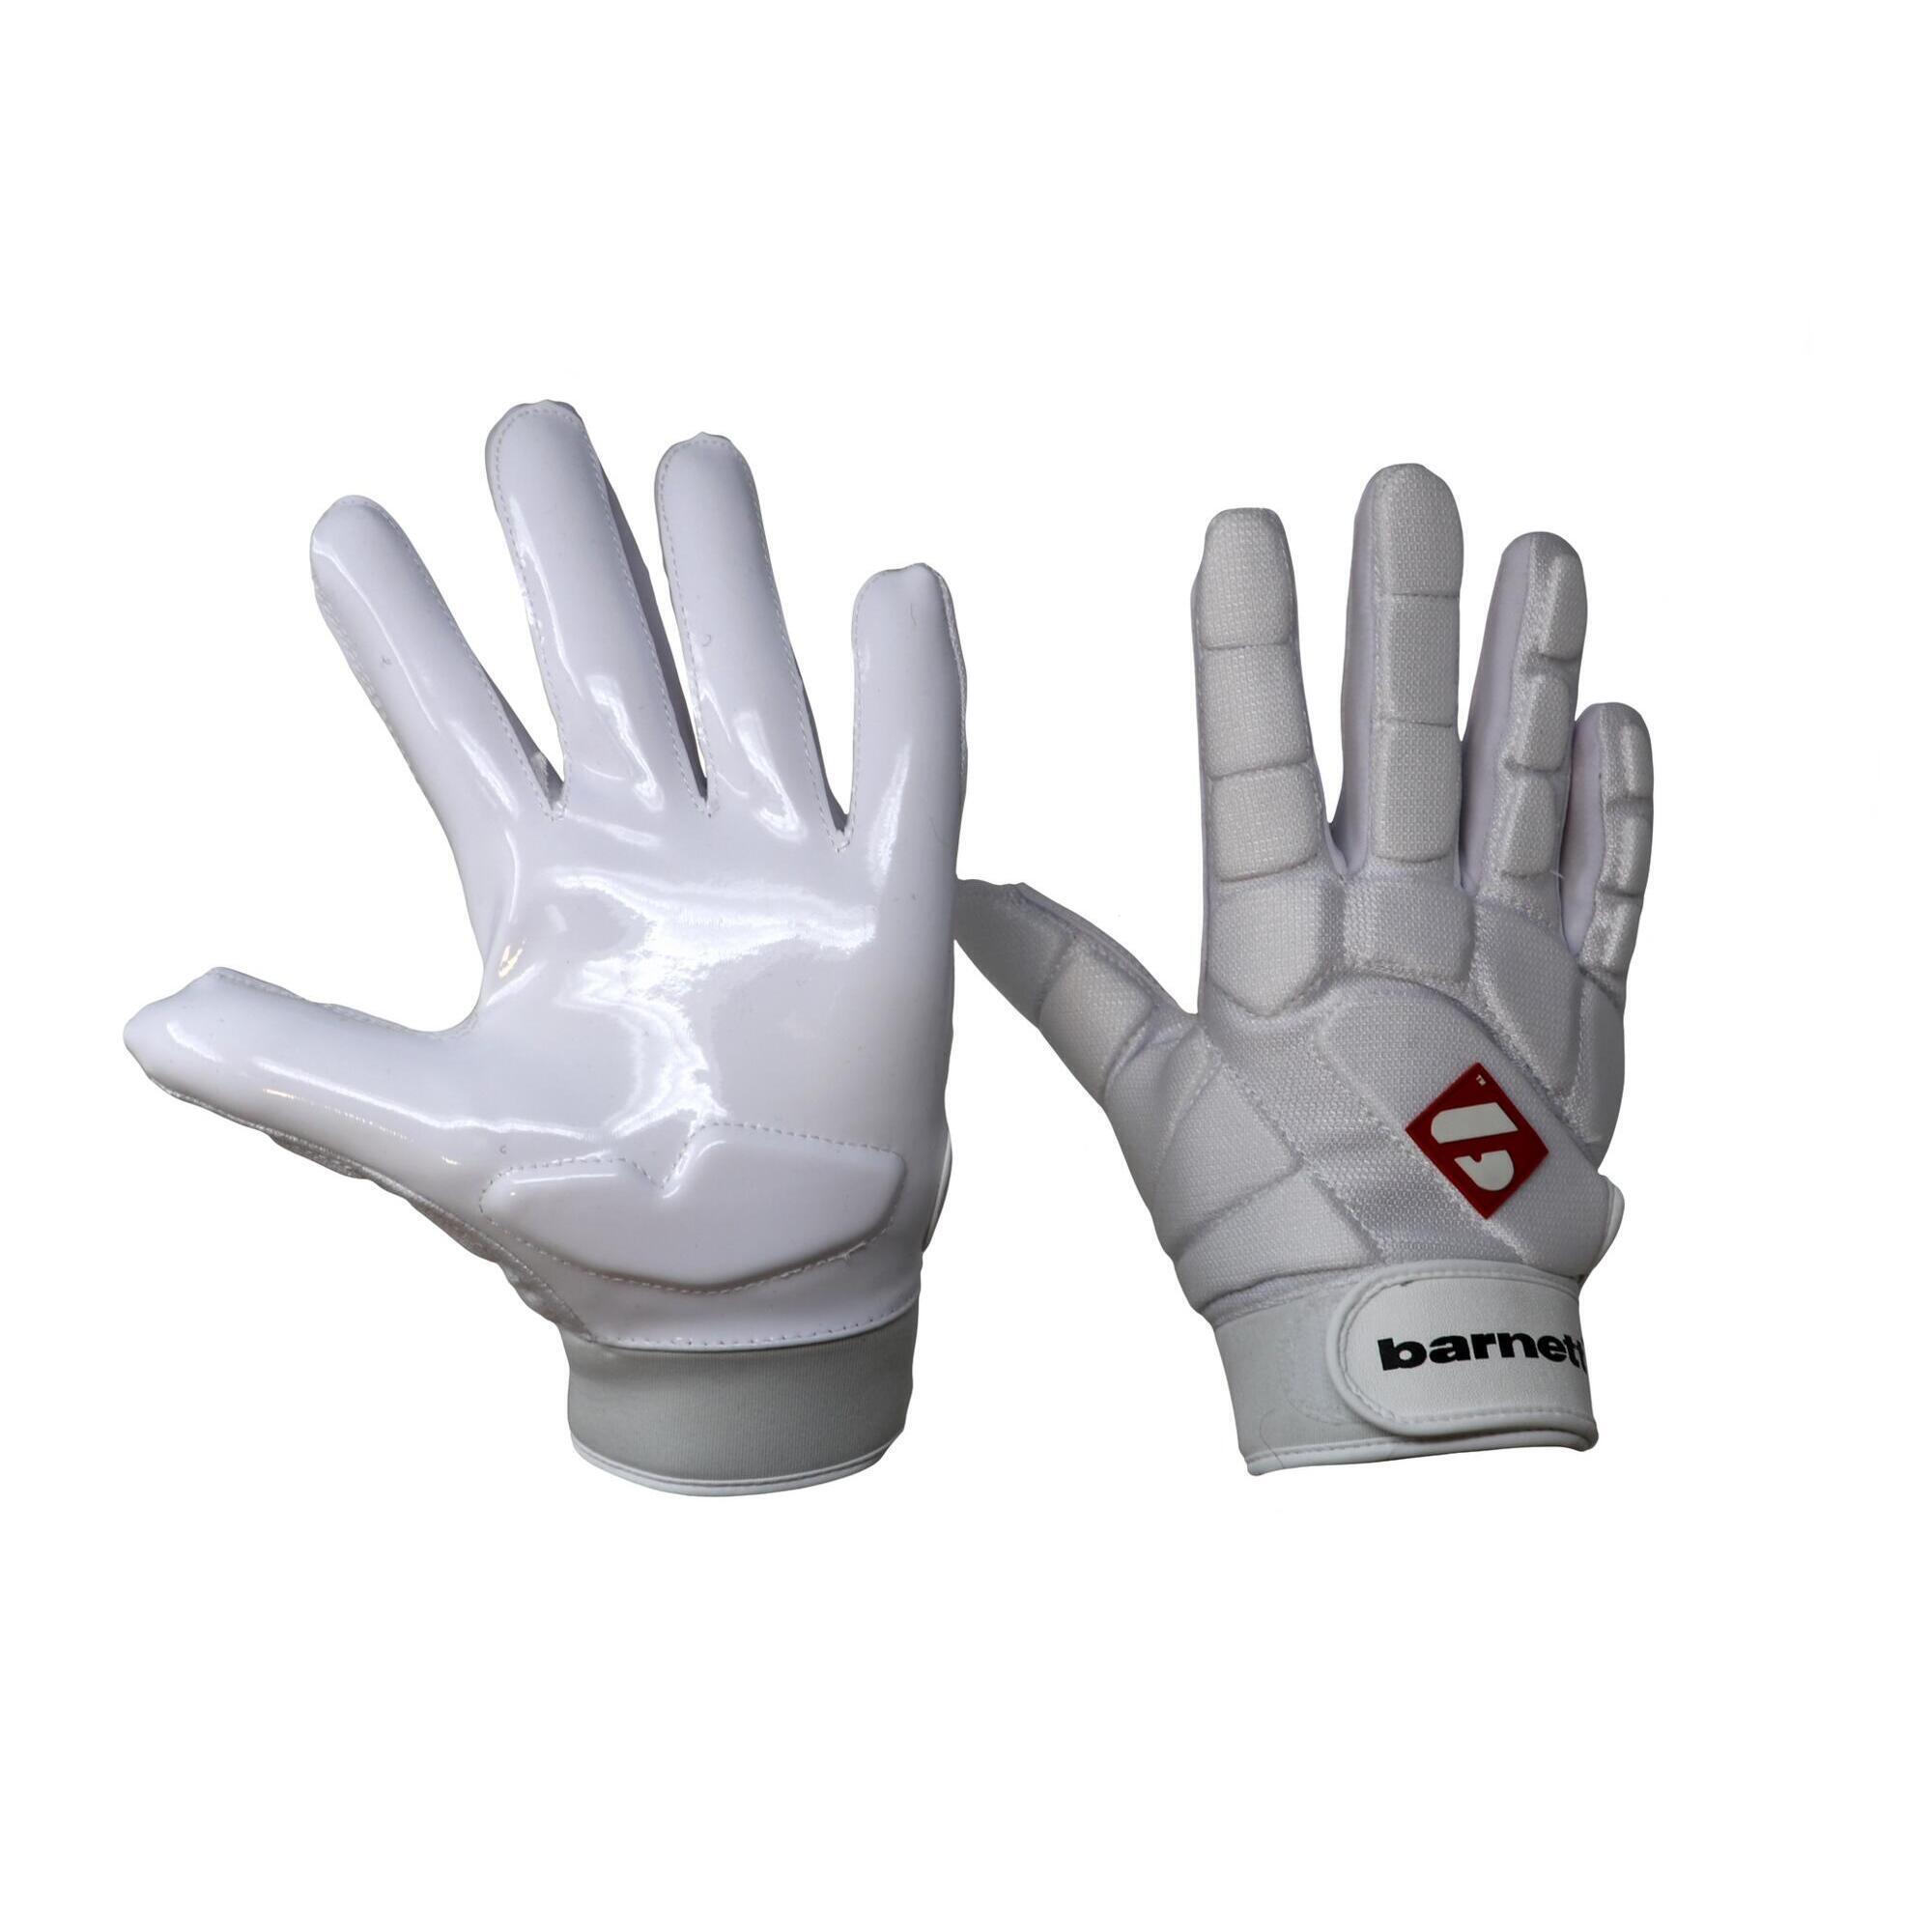  pro linebacker american football gloves, LB,RB,TE White FKG-03 1/4